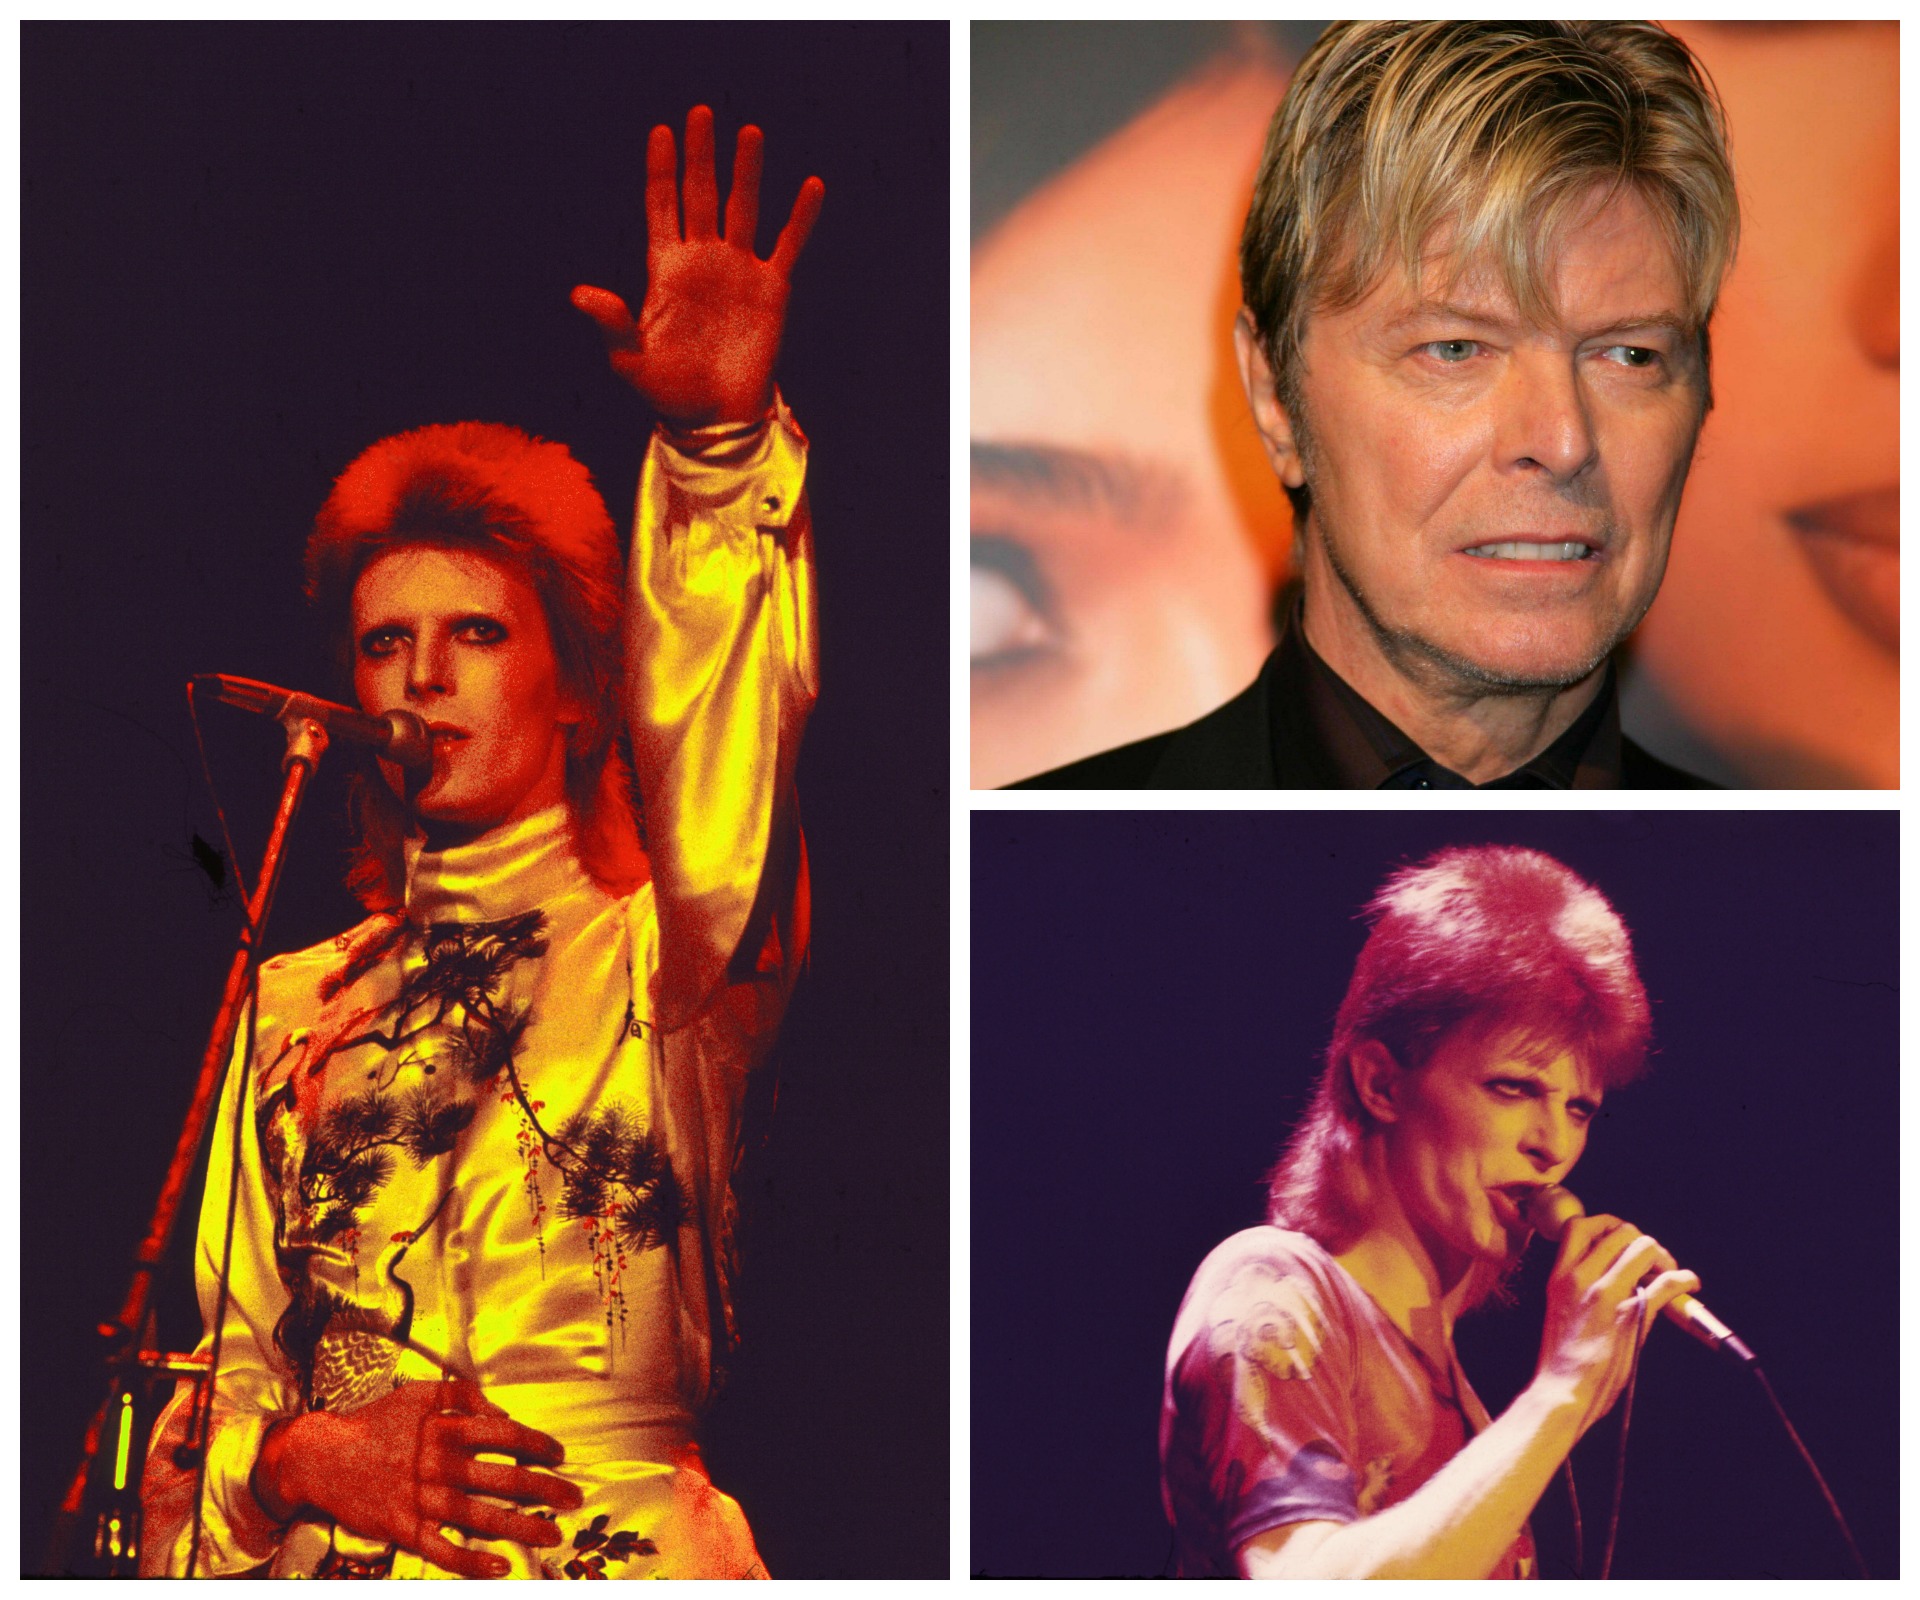 David Bowie dies of cancer